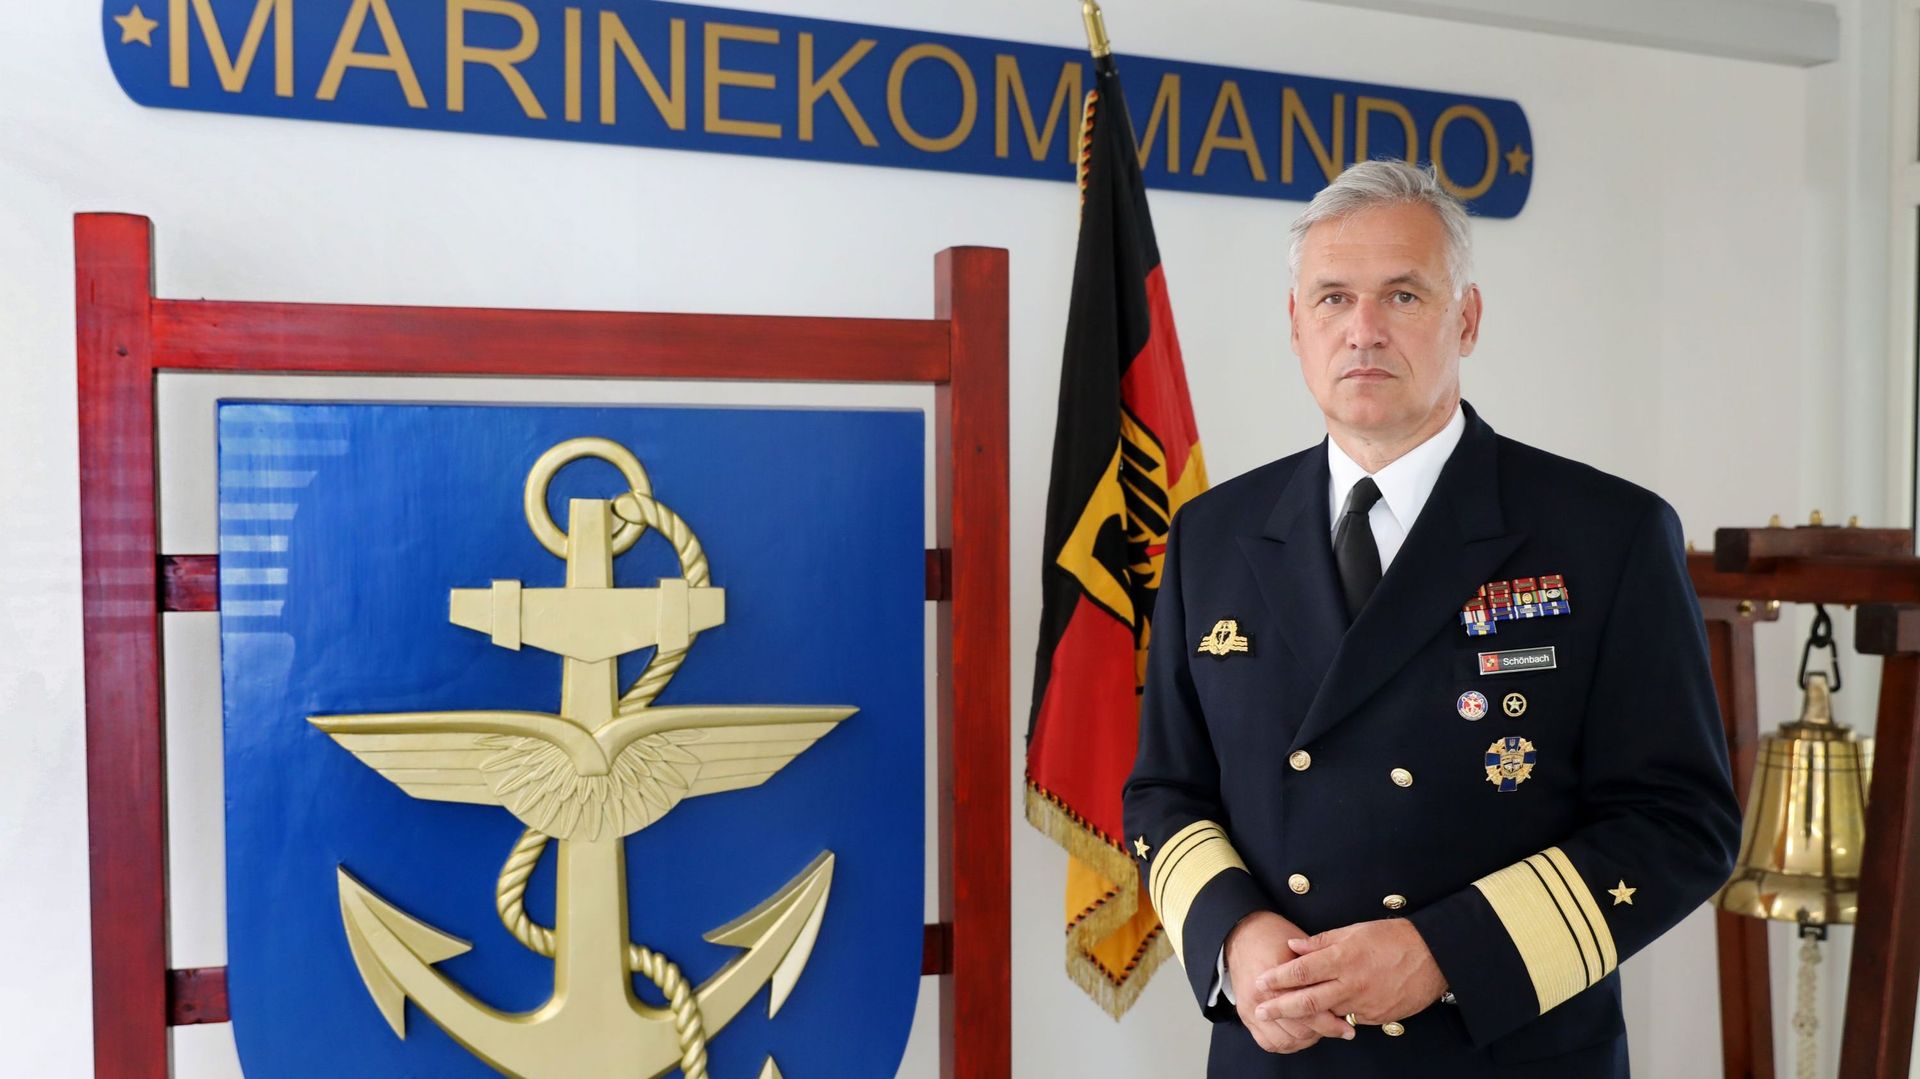 Conflit en Ukraine : le chef de la marine allemande démissionne après avoir appelé au "respect" de Poutine